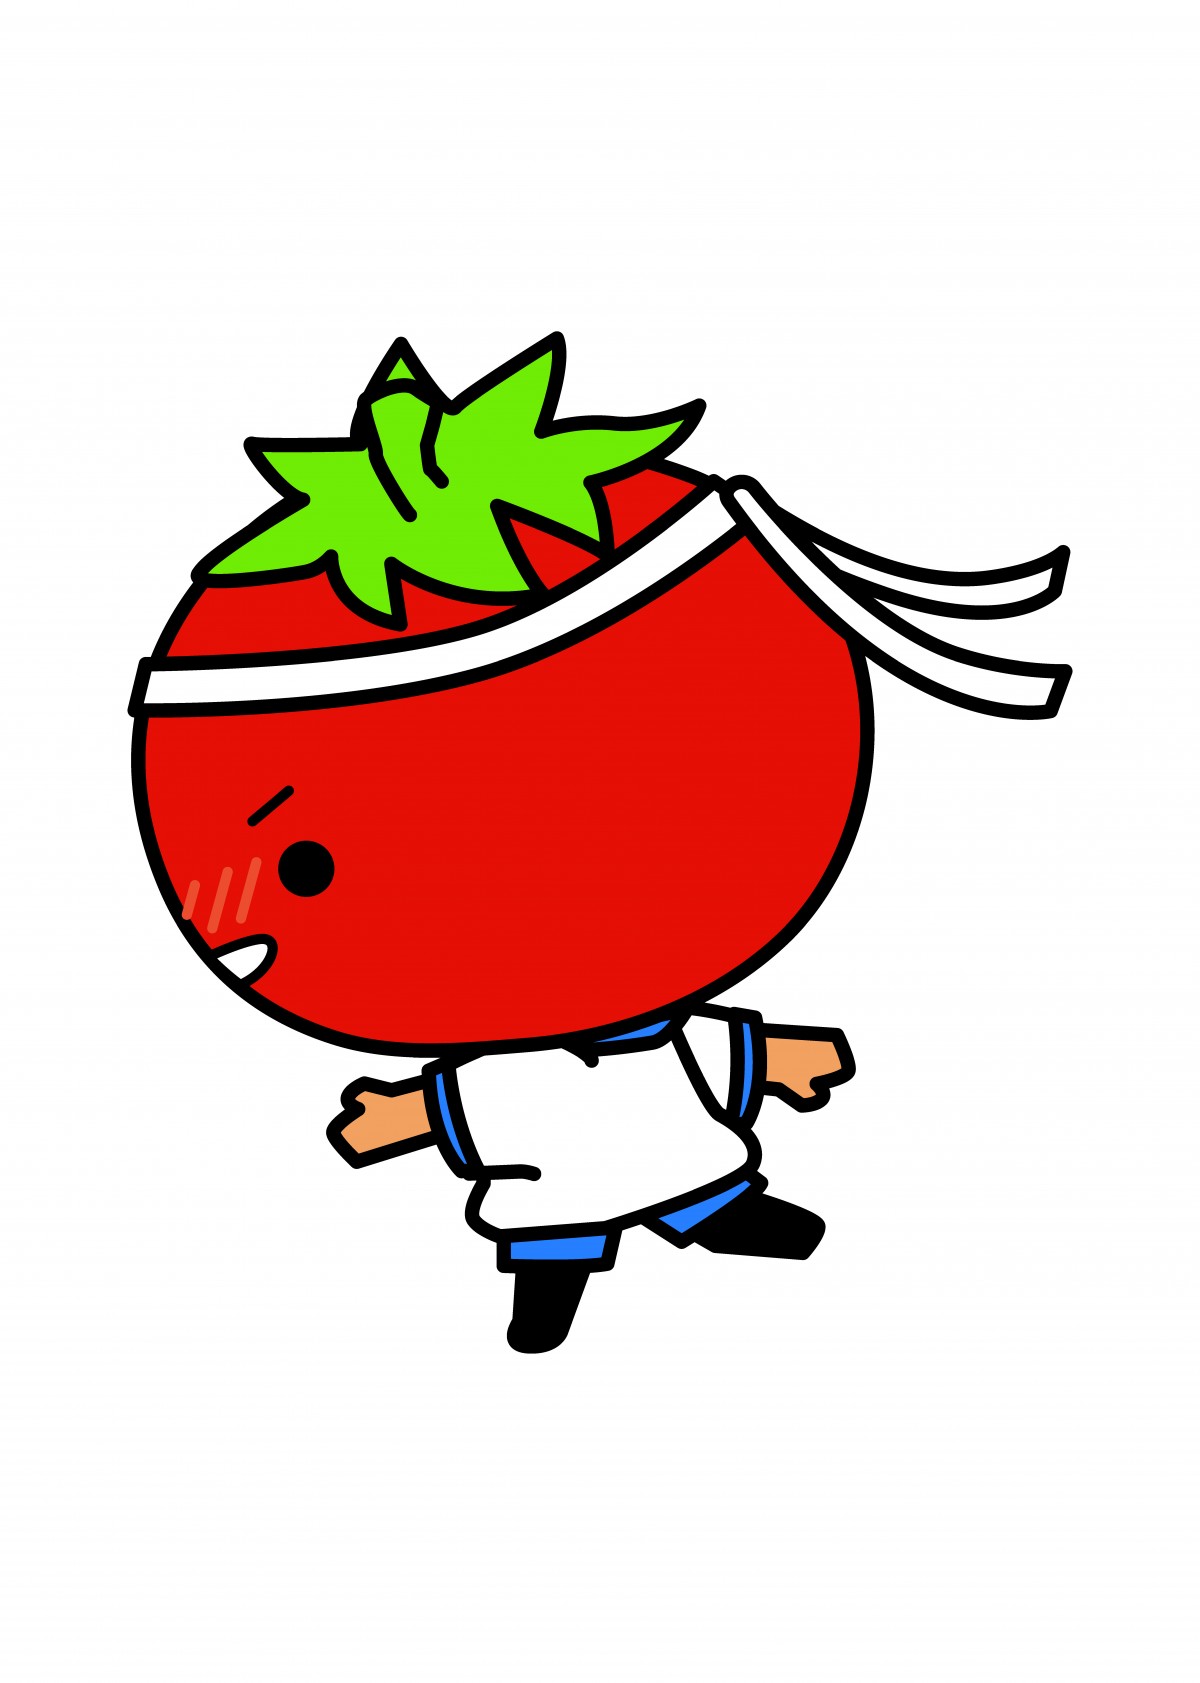 トマトに手足があるキャラクターが体操服を着て走っているイラスト